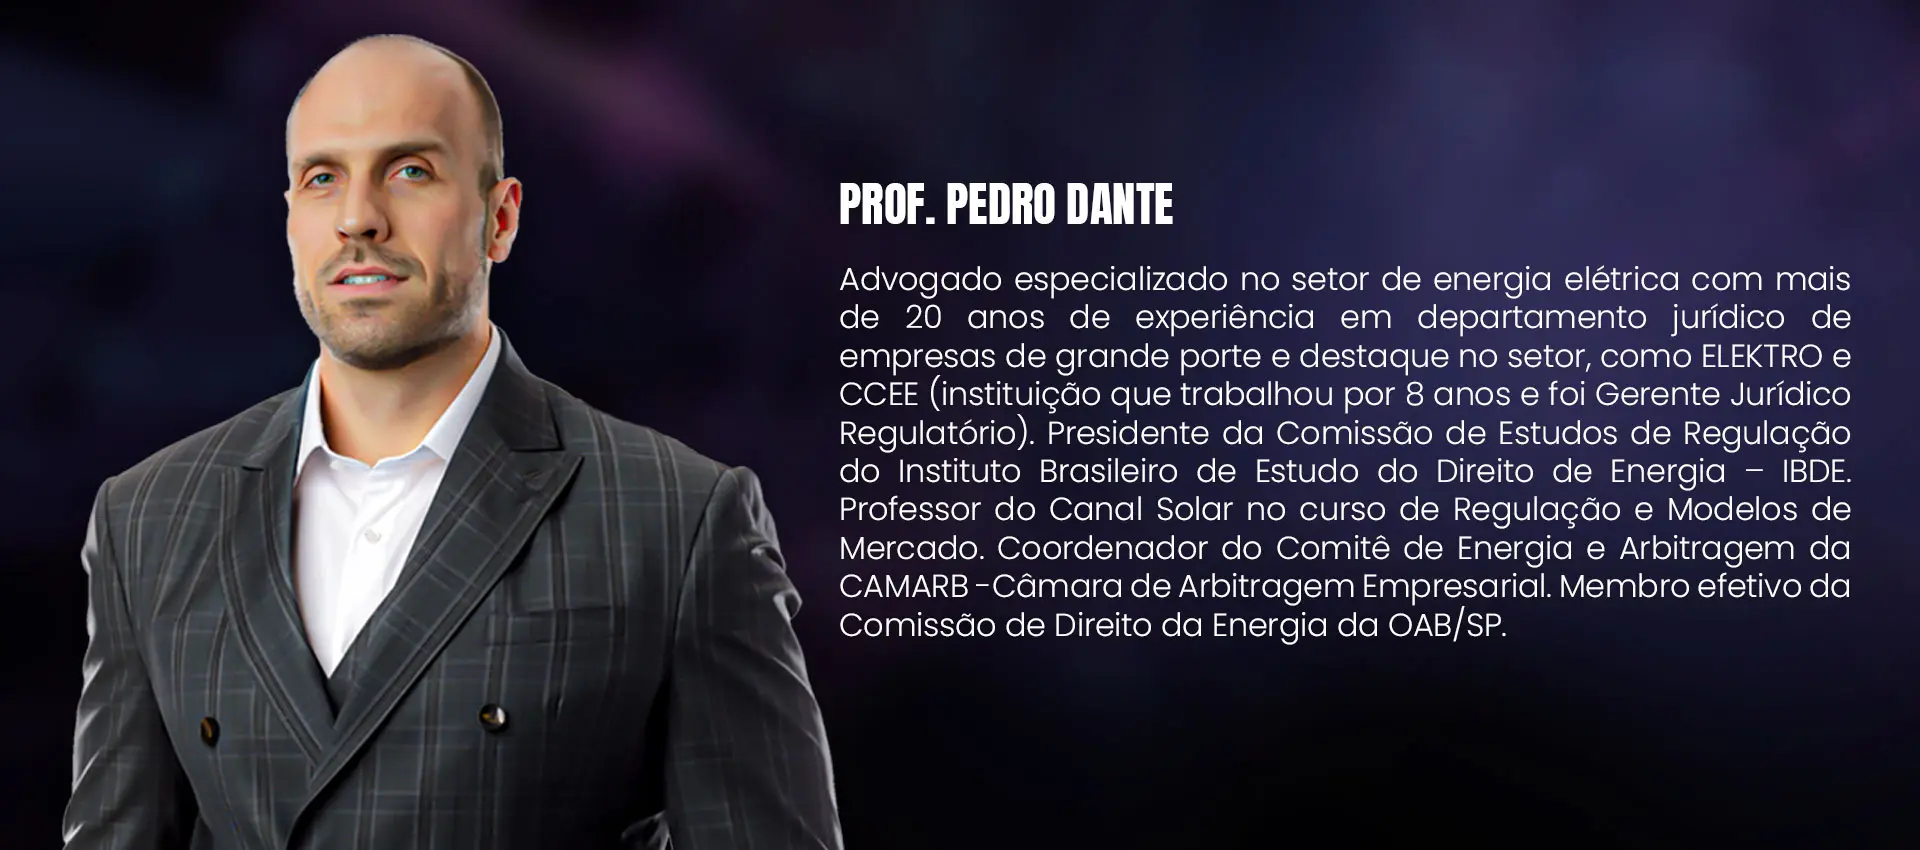 Professor Pedro Dante